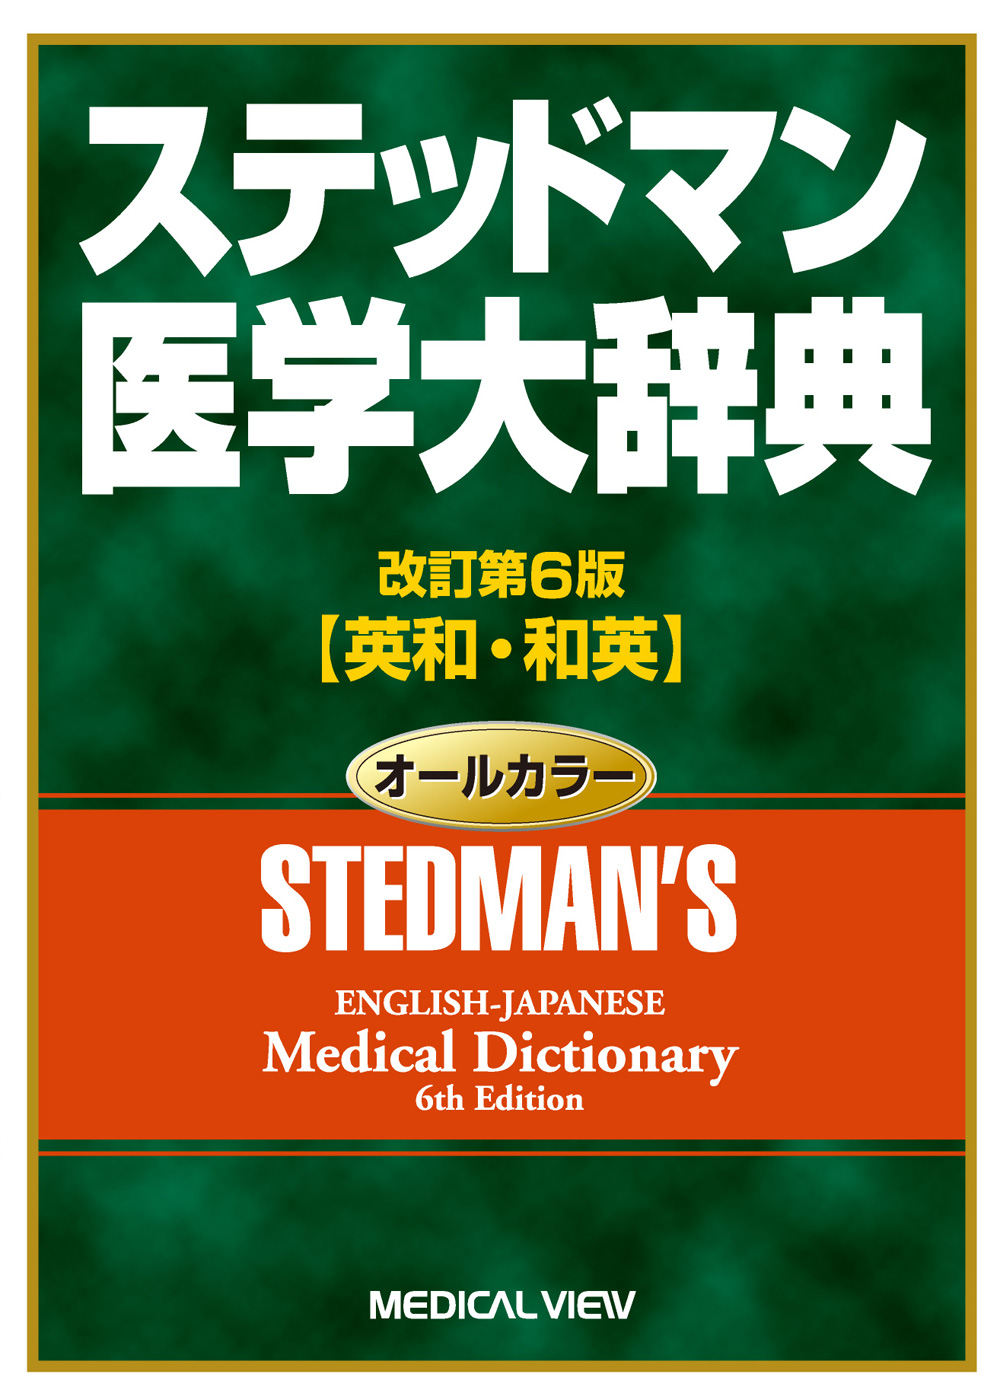 ステッドマン医学大辞典 : 英和・和英